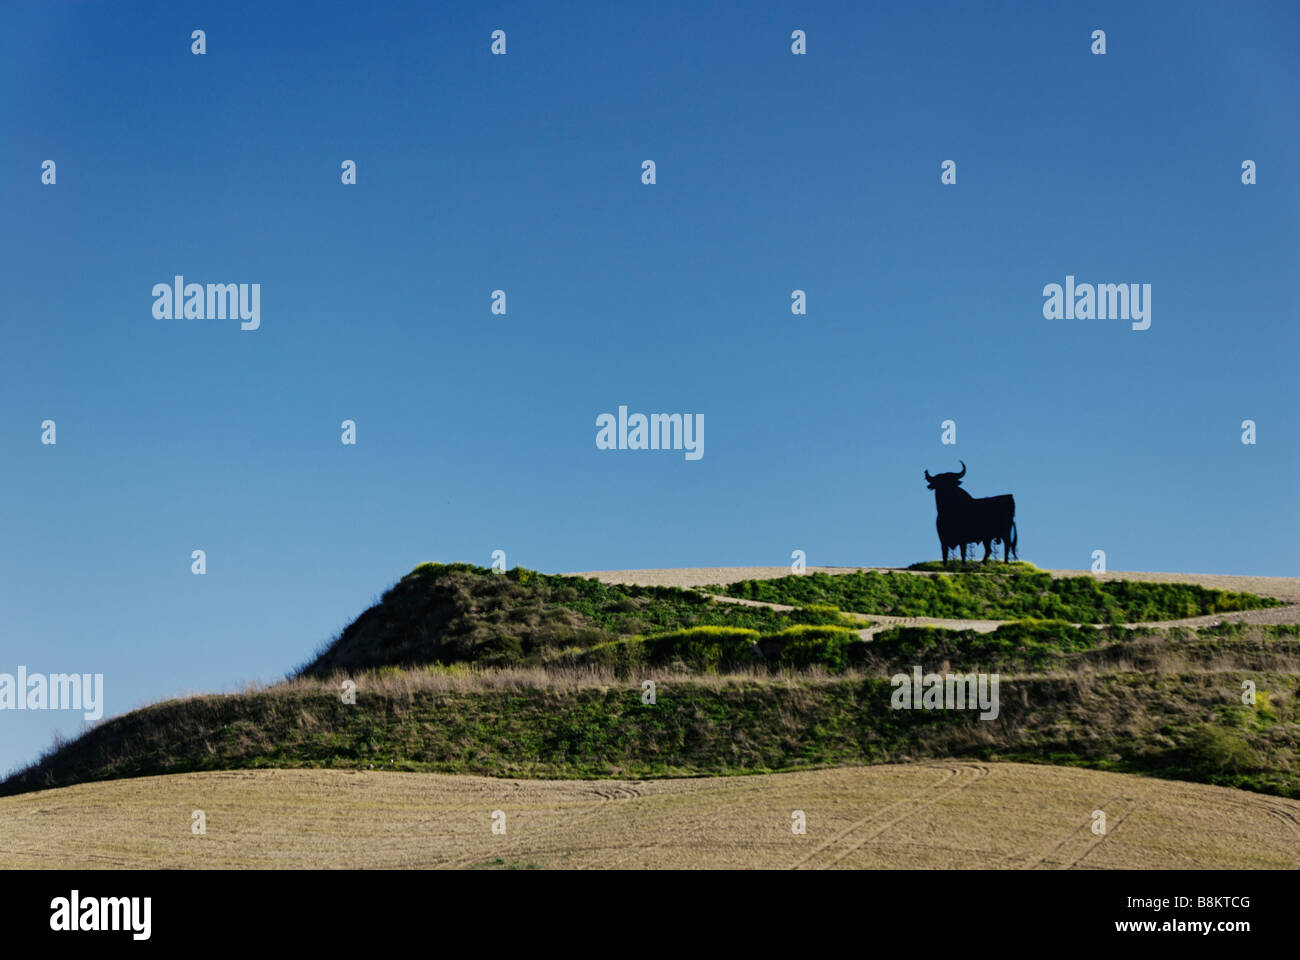 Famous landmark Osborne bull on a hillside Spain Stock Photo